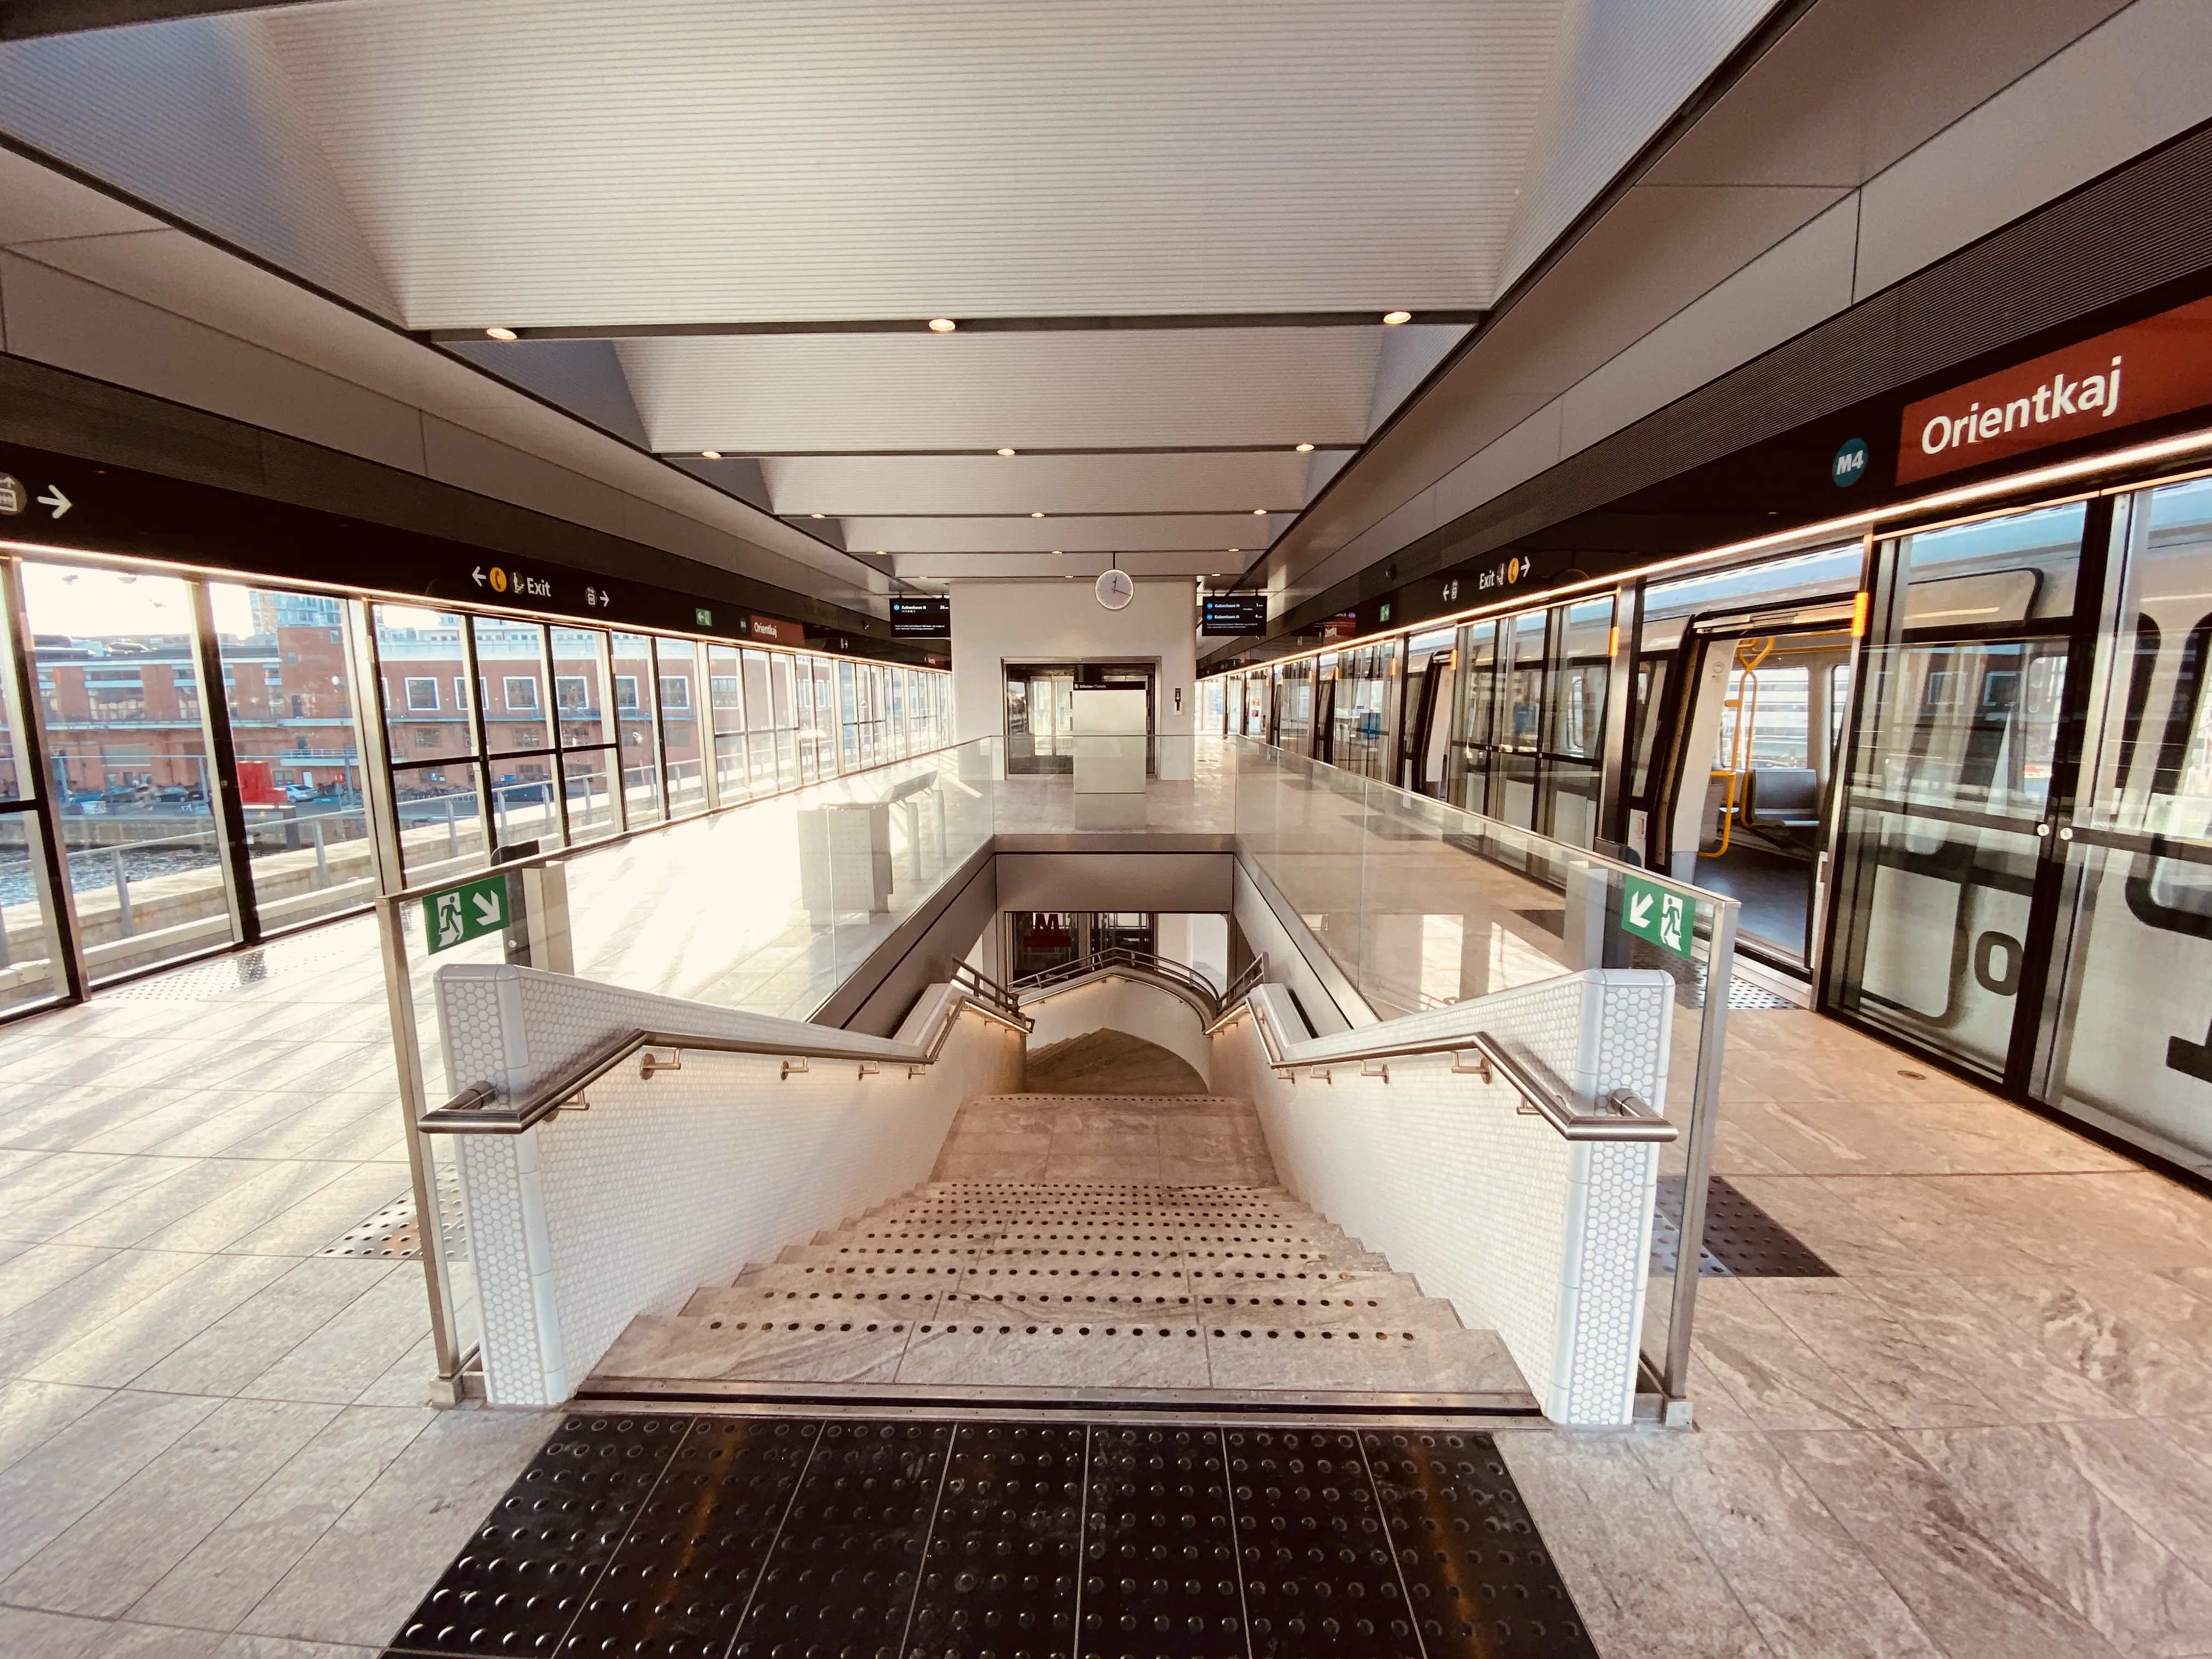 Billede af Orientkaj Metrostation.